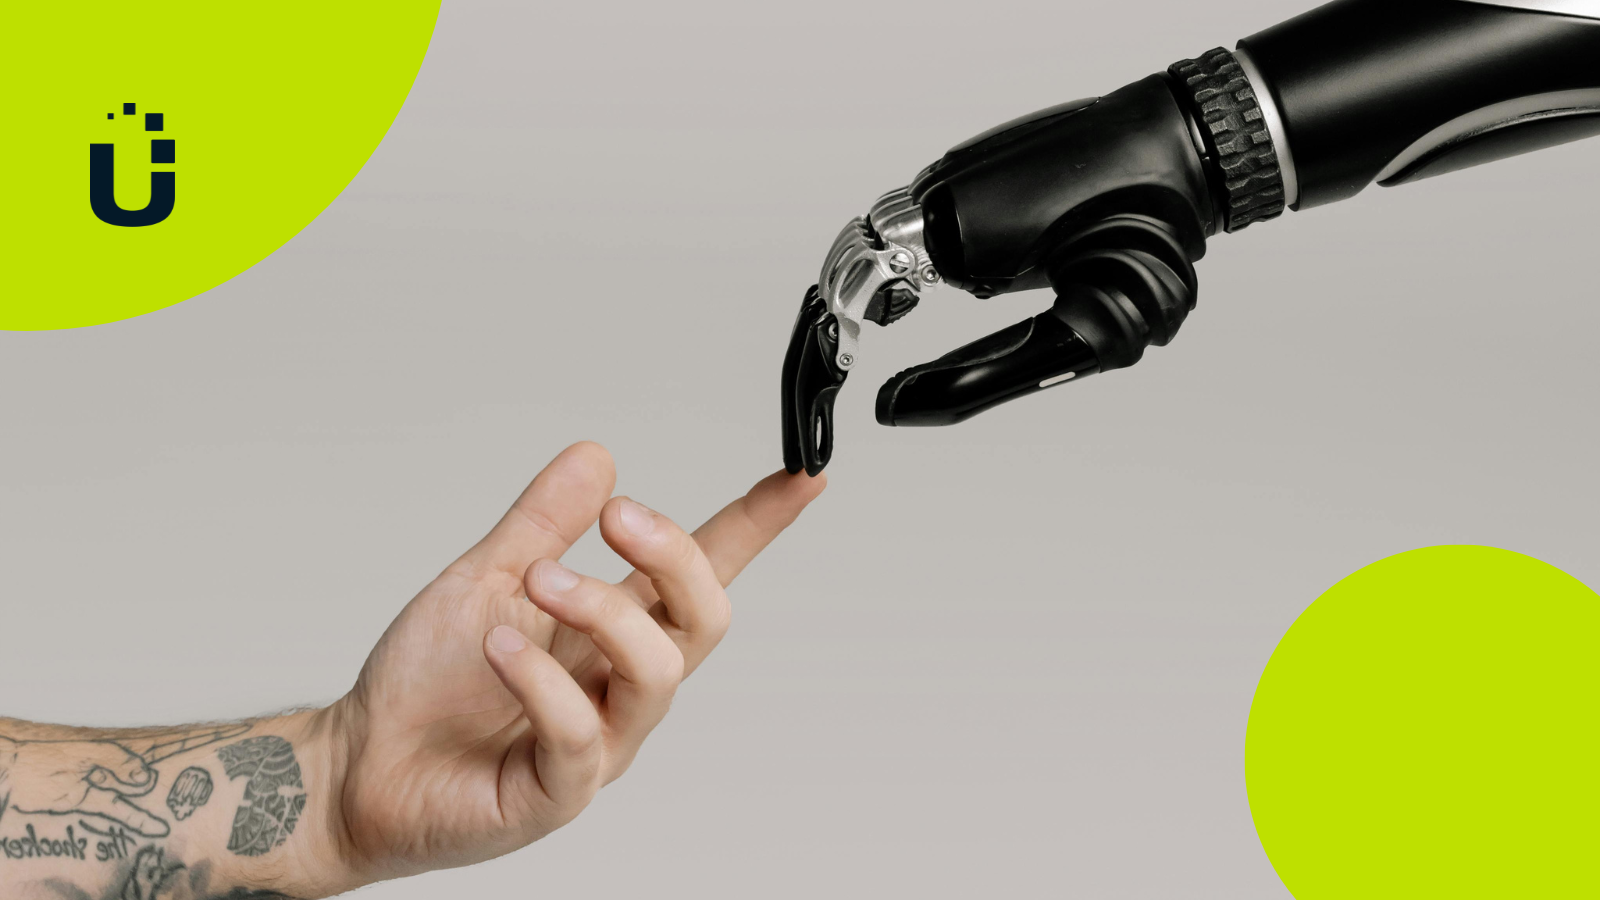 AI - Robotic arm meets human hand